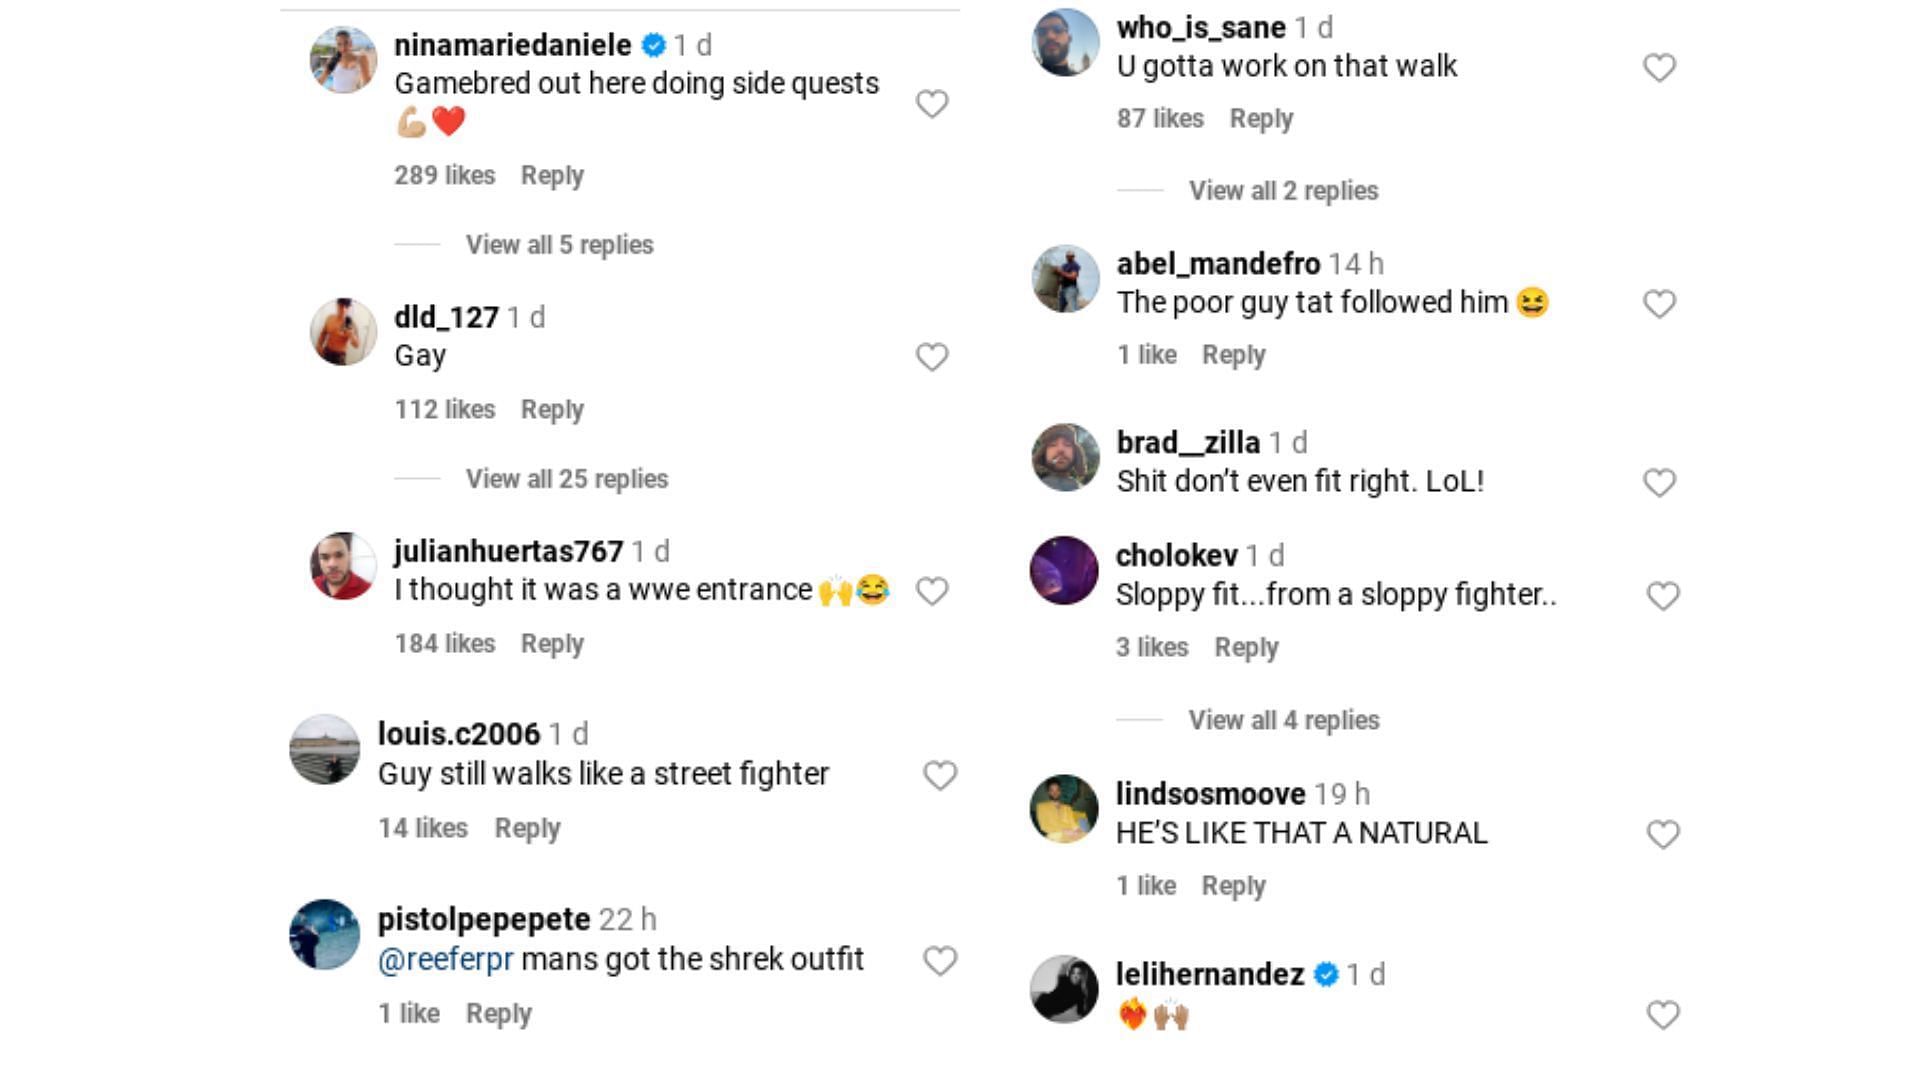 More fan reactions on Instagram